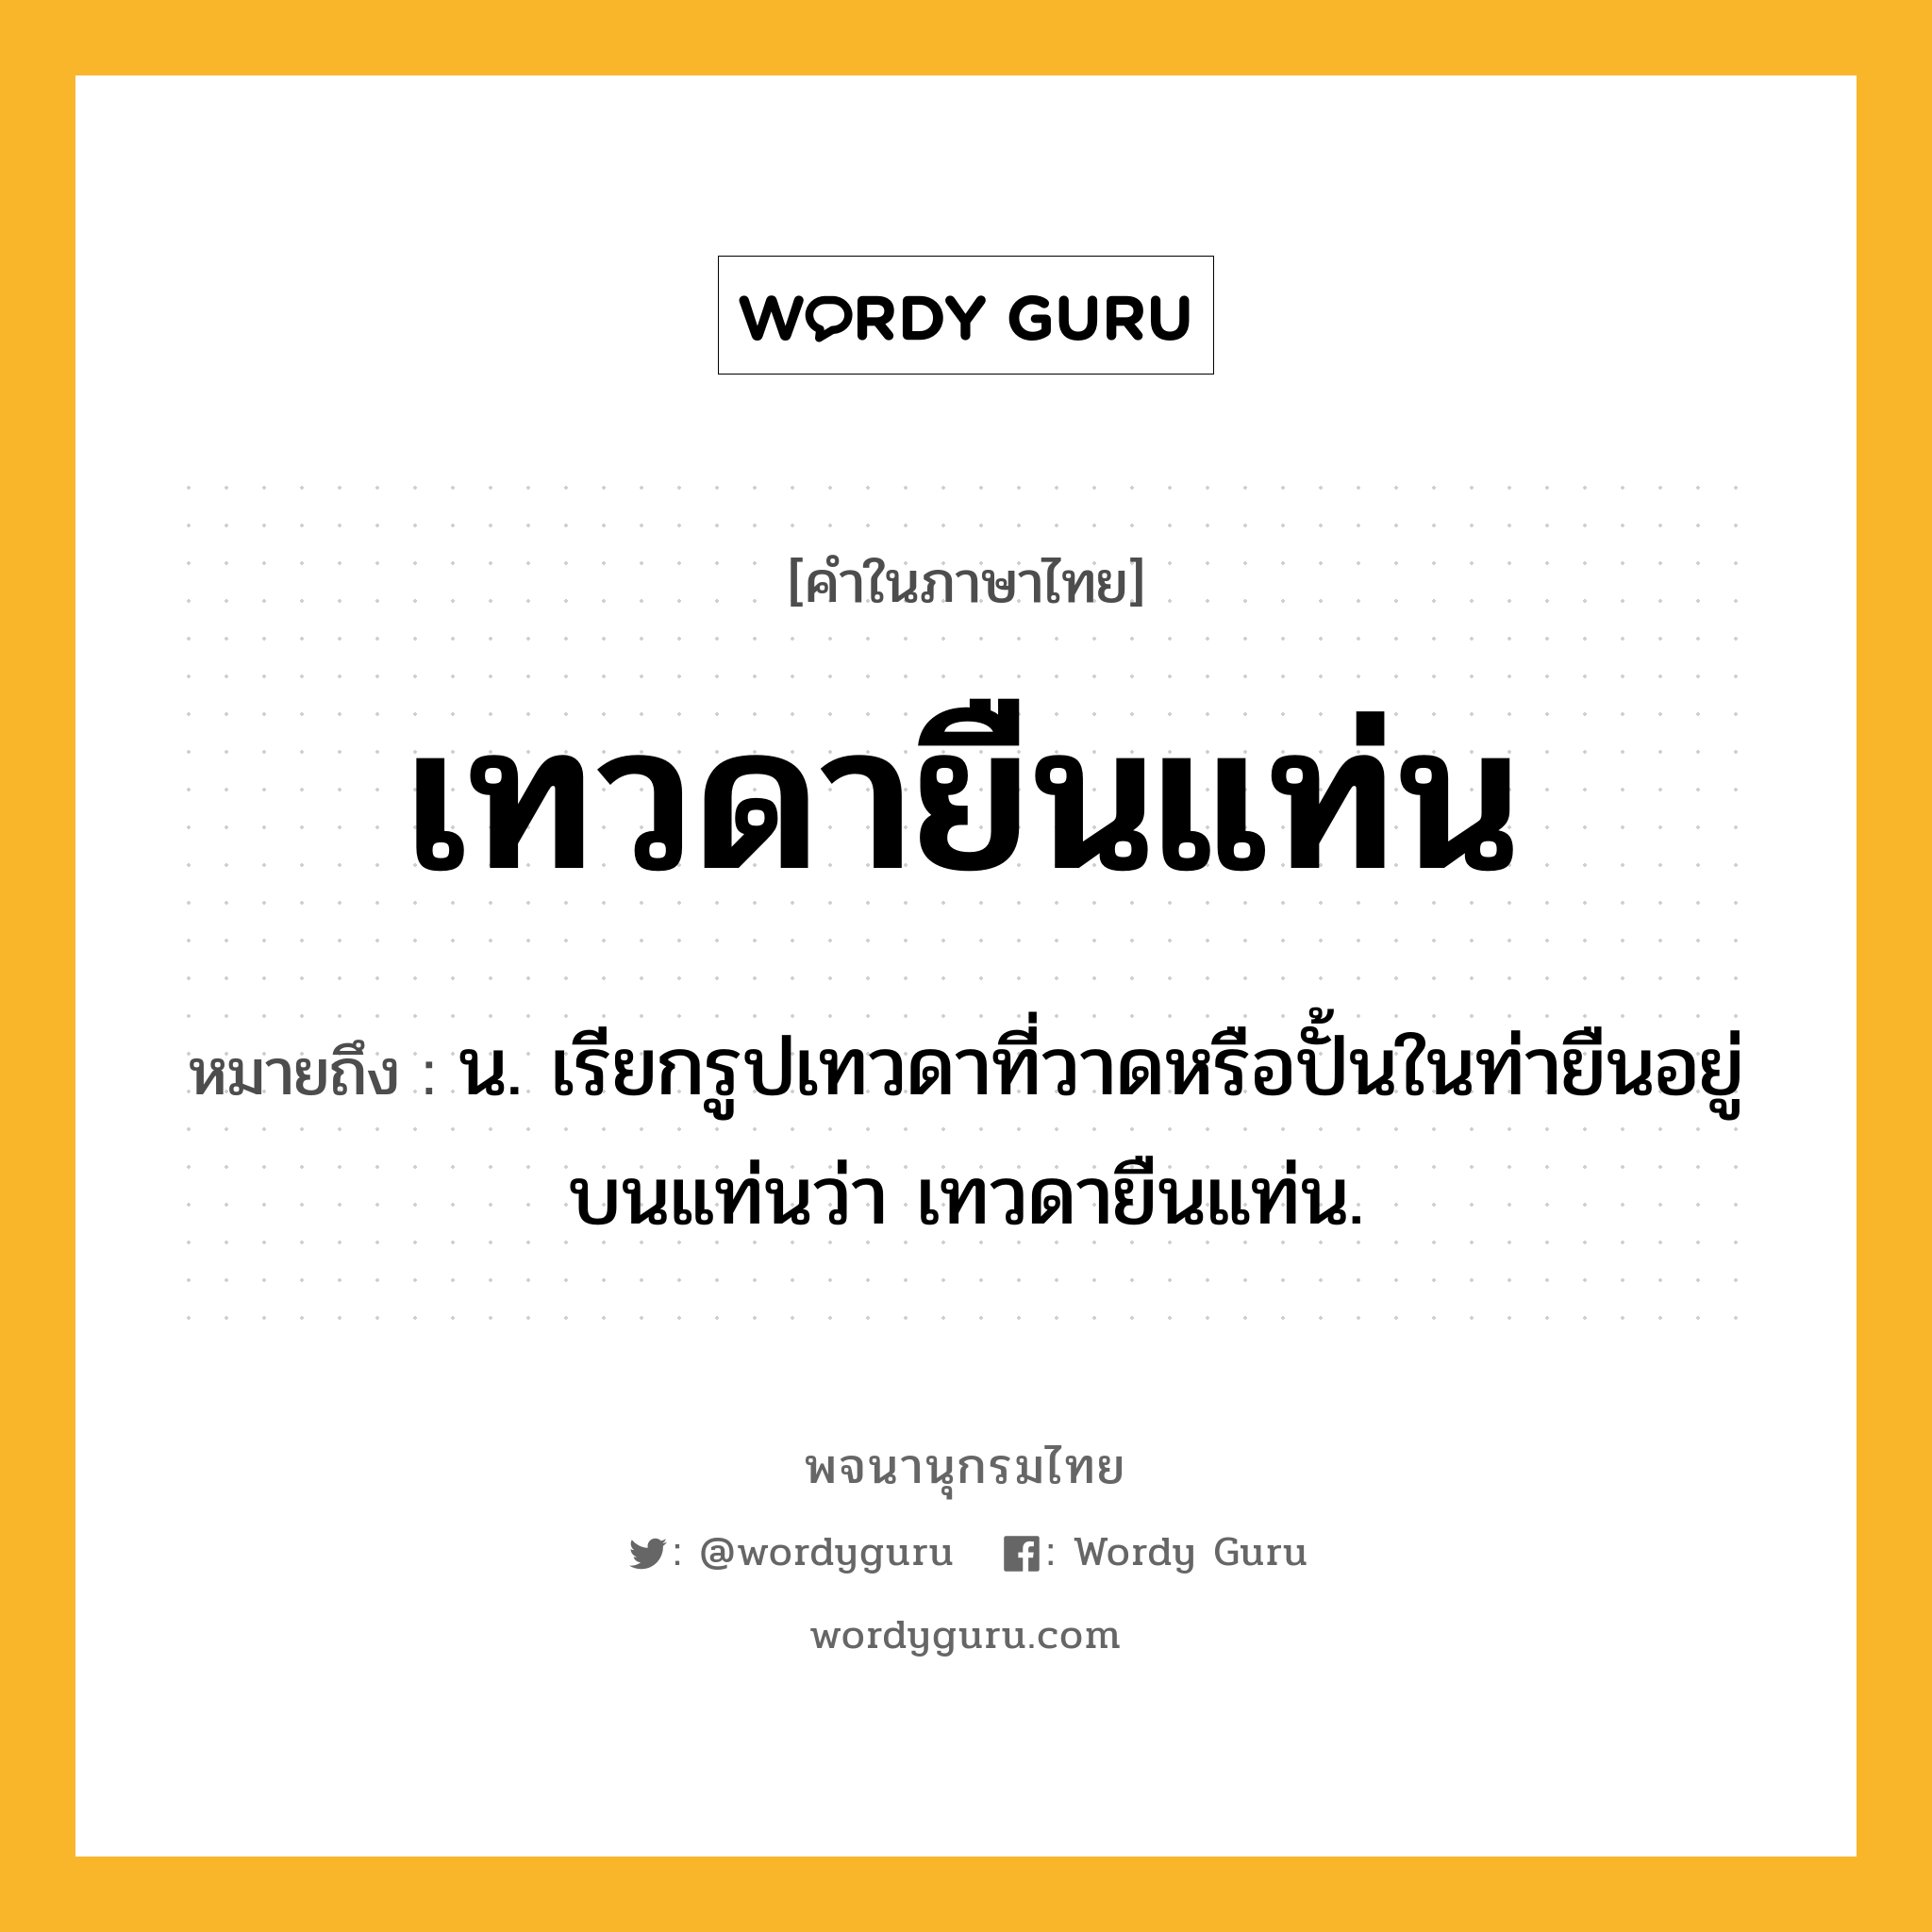 เทวดายืนแท่น ความหมาย หมายถึงอะไร?, คำในภาษาไทย เทวดายืนแท่น หมายถึง น. เรียกรูปเทวดาที่วาดหรือปั้นในท่ายืนอยู่บนแท่นว่า เทวดายืนแท่น.